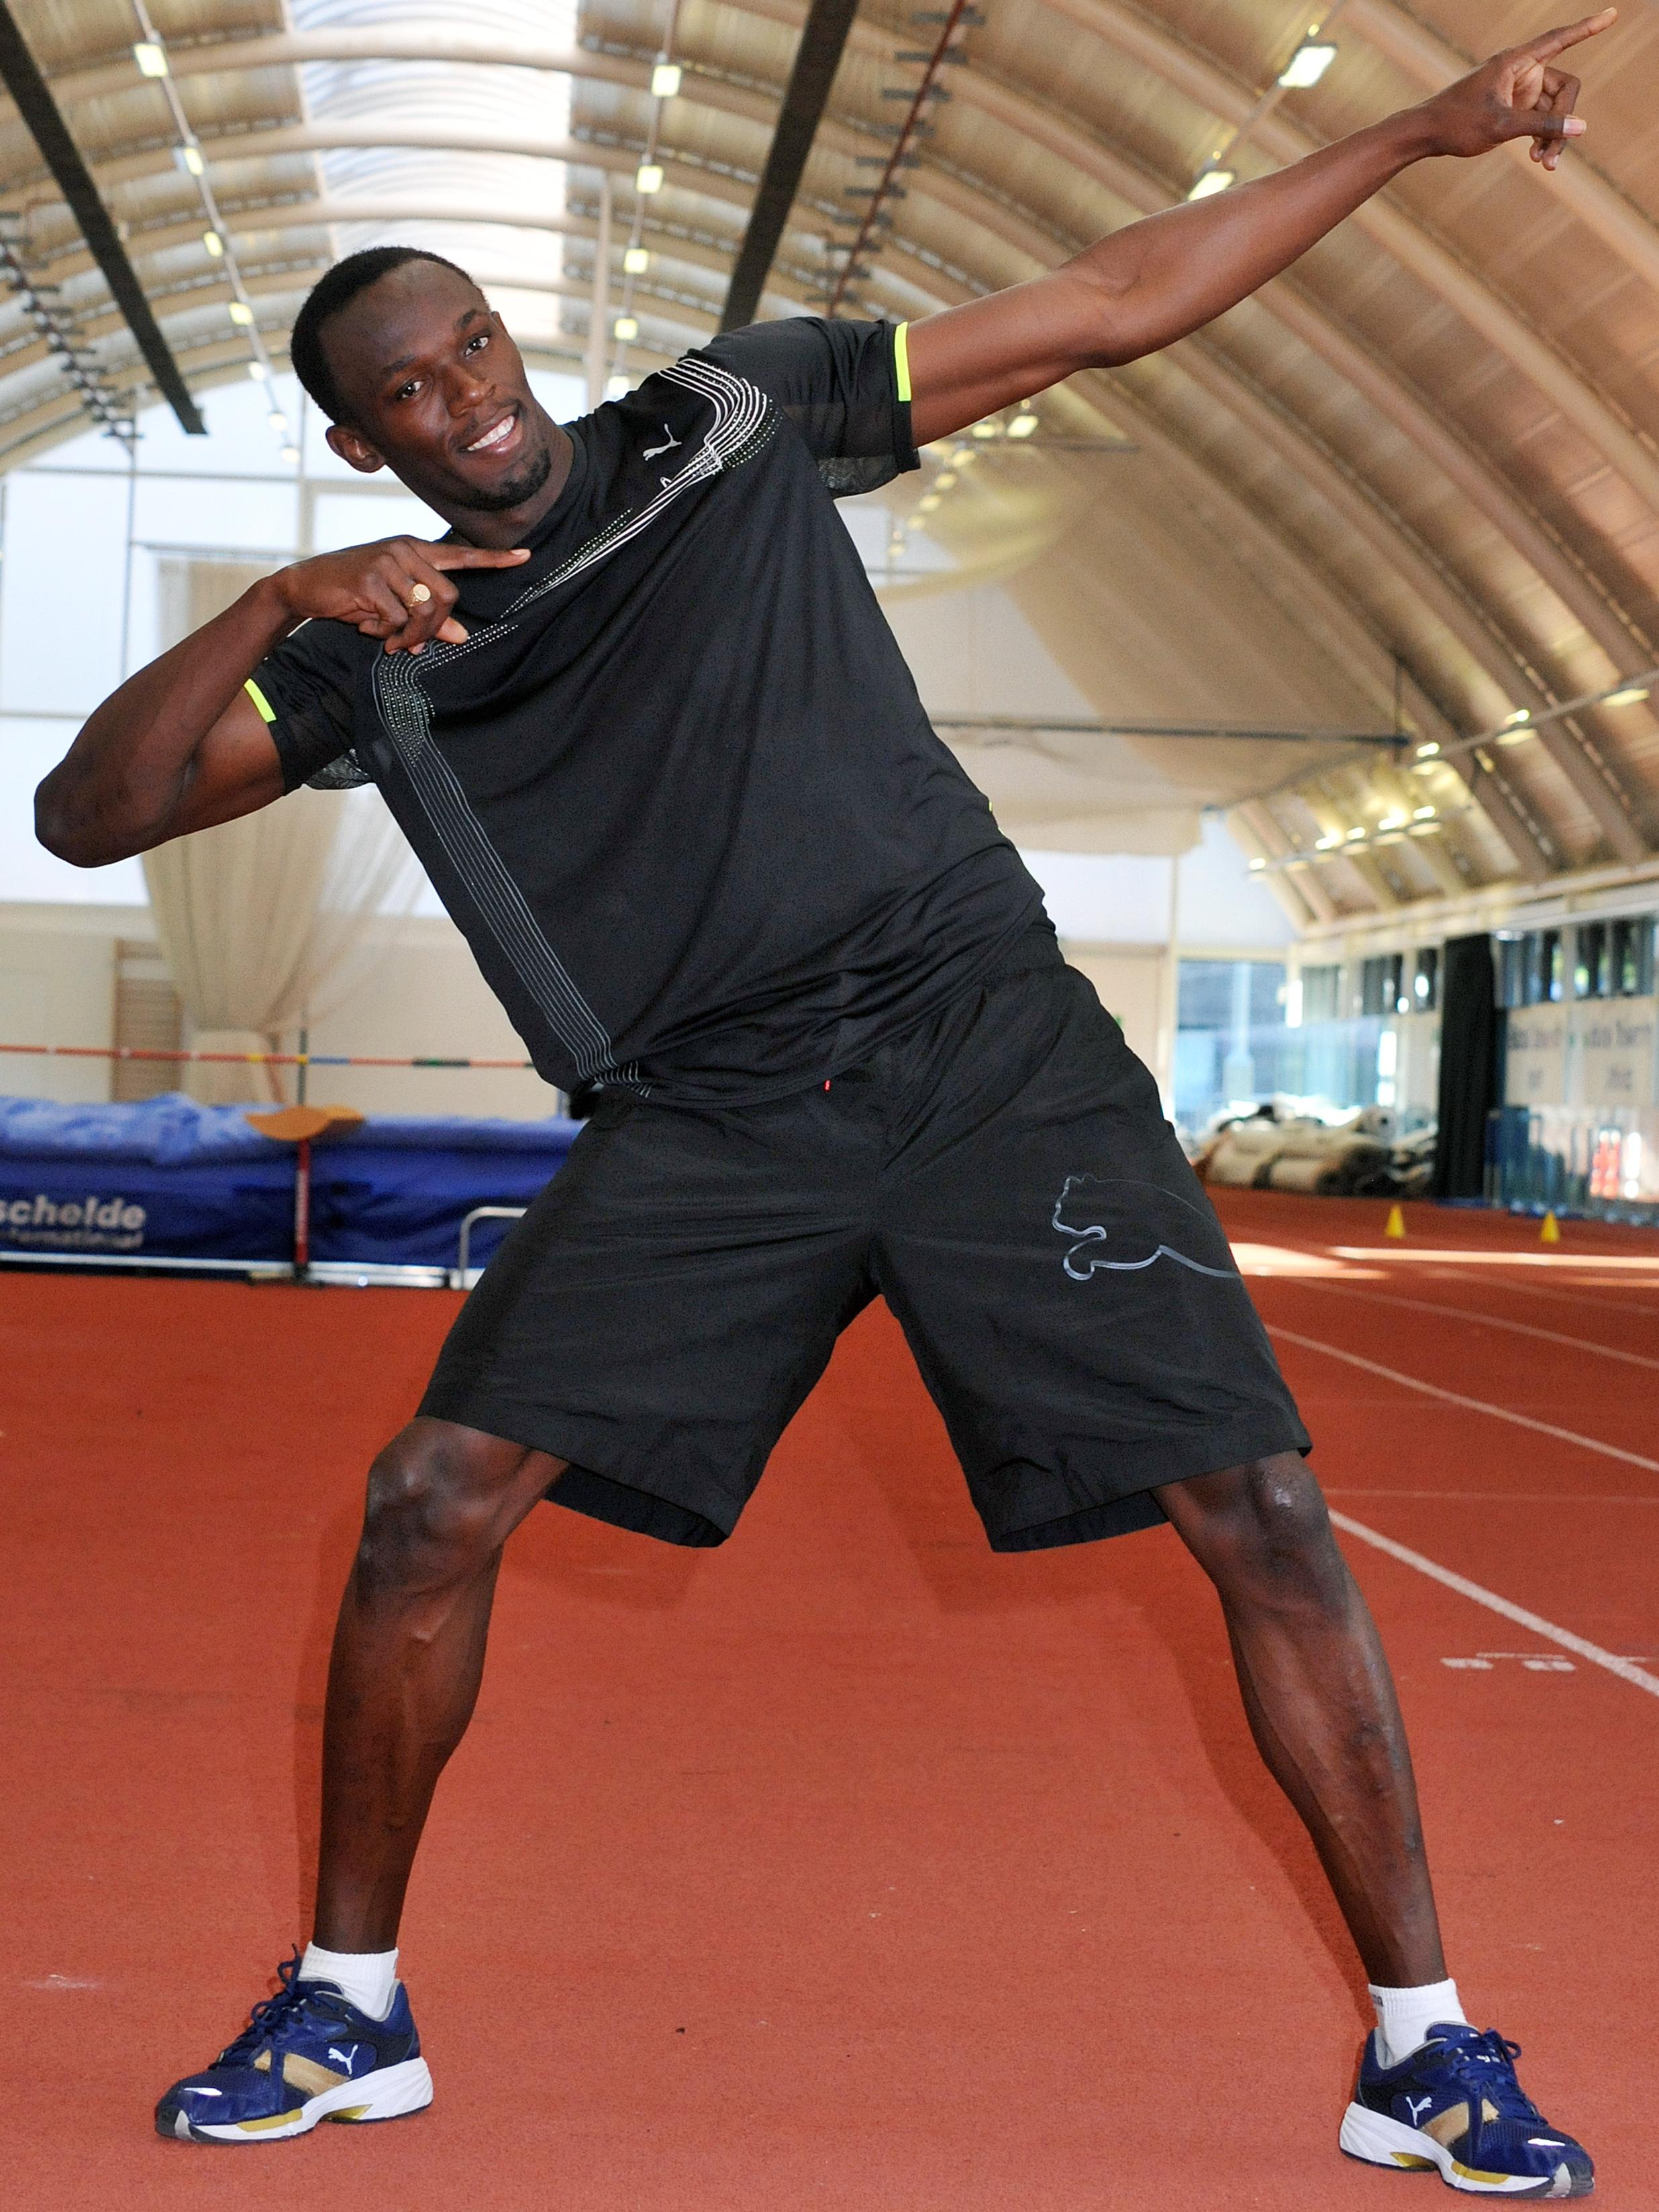 Les cellules vont tenter de battre des records de sprint, tout comme l'a fait le Jamaïcain Usain Bolt, détenteur des meilleures performances sur 100 m et 200 m. © Université de Brunei, Flickr CC by 2.0